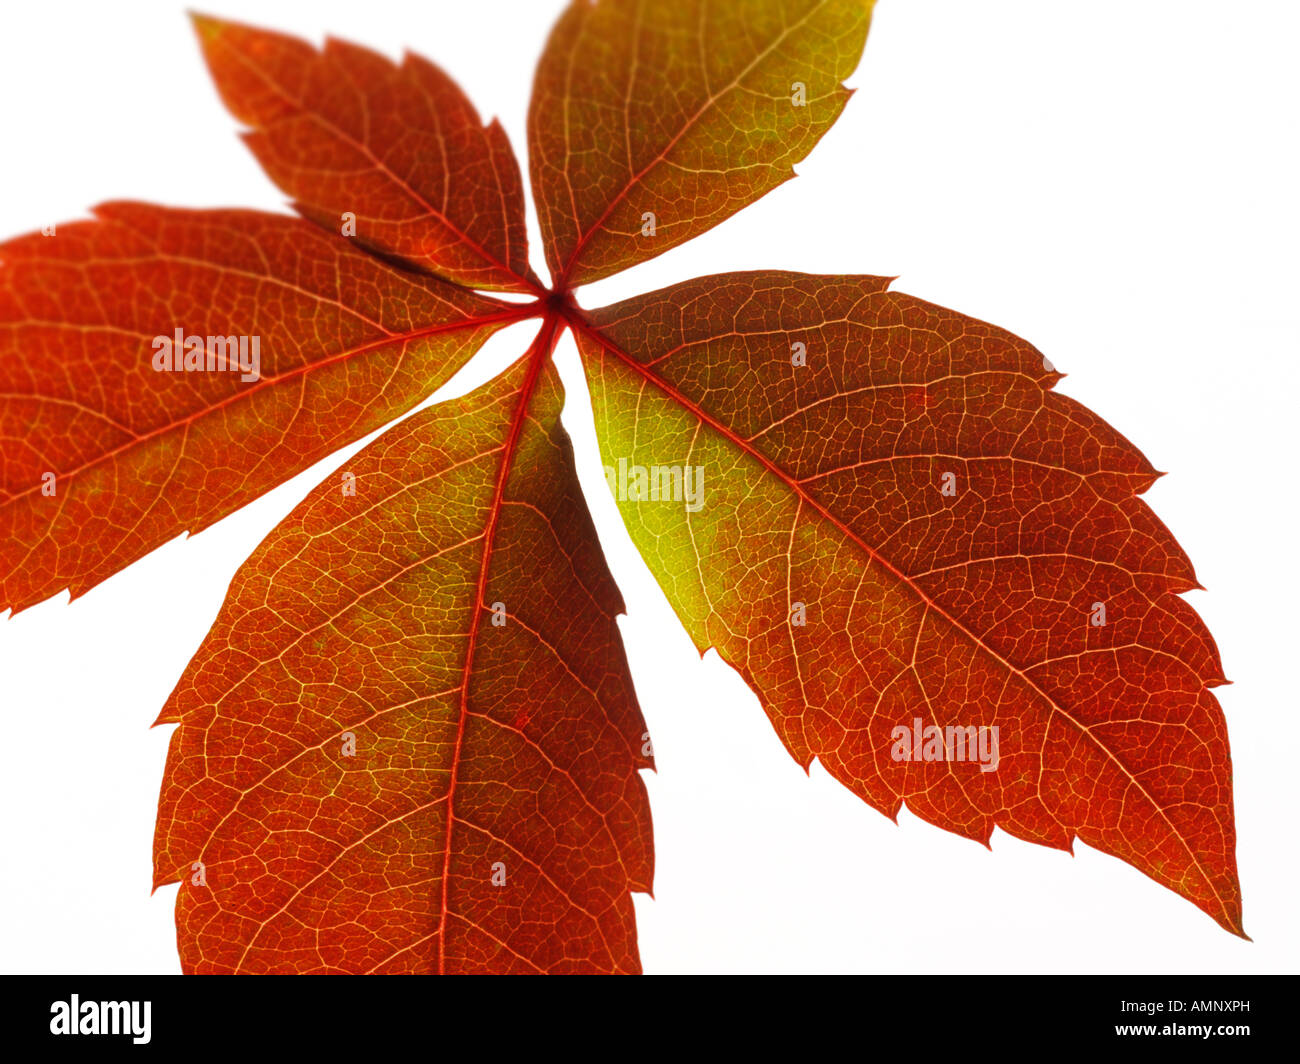 Singoli autunno autunno foglia contro uno sfondo bianco. immagine grafica contro uno sfondo bianco per il taglio. Foto Stock